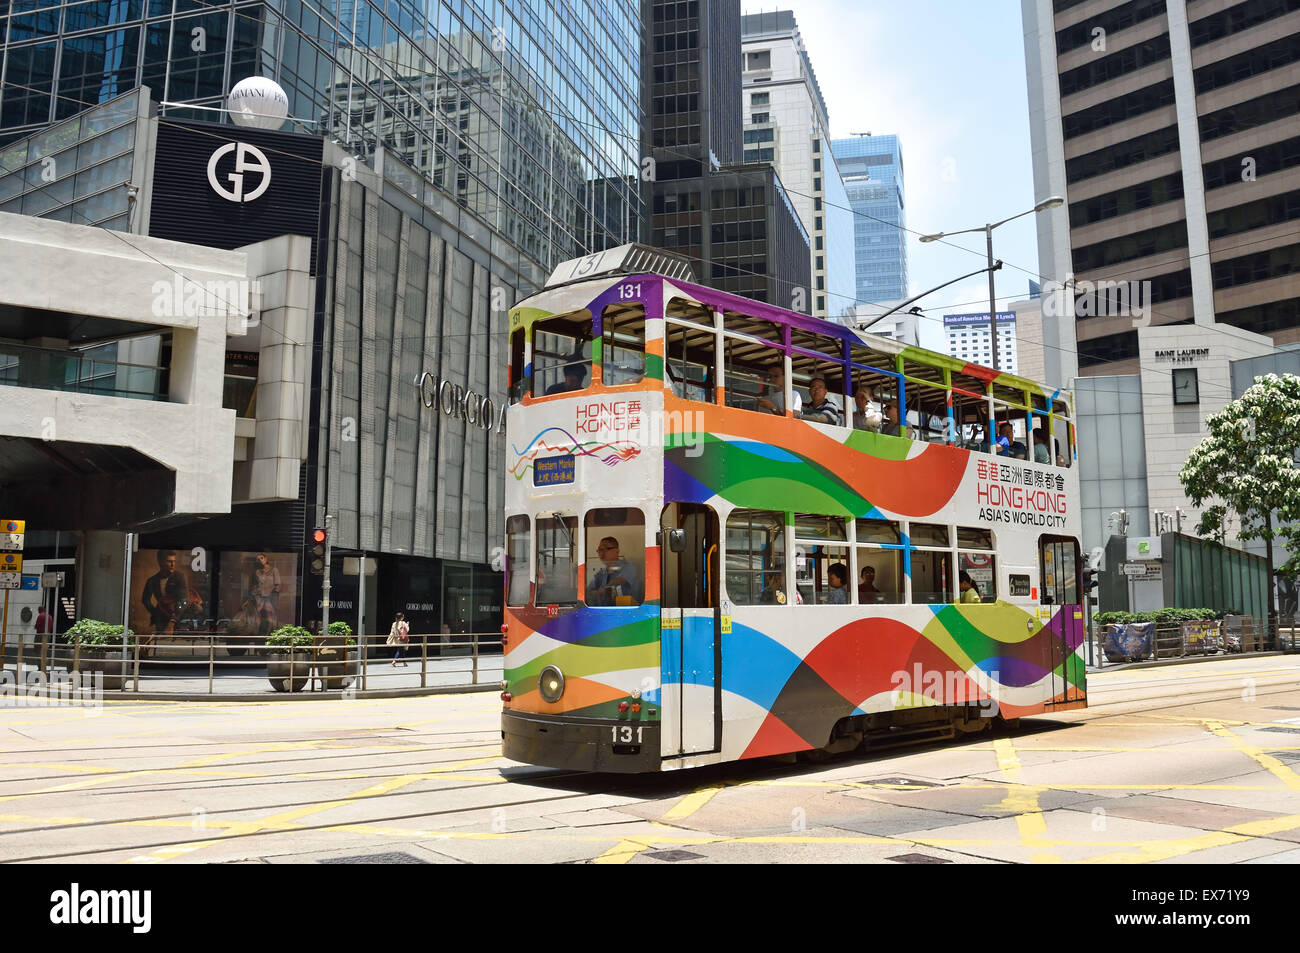 Double Deck avec le tram Tramway publicité corps Hong Kong Chine ( occupé l'île de Hong Kong ) Banque D'Images